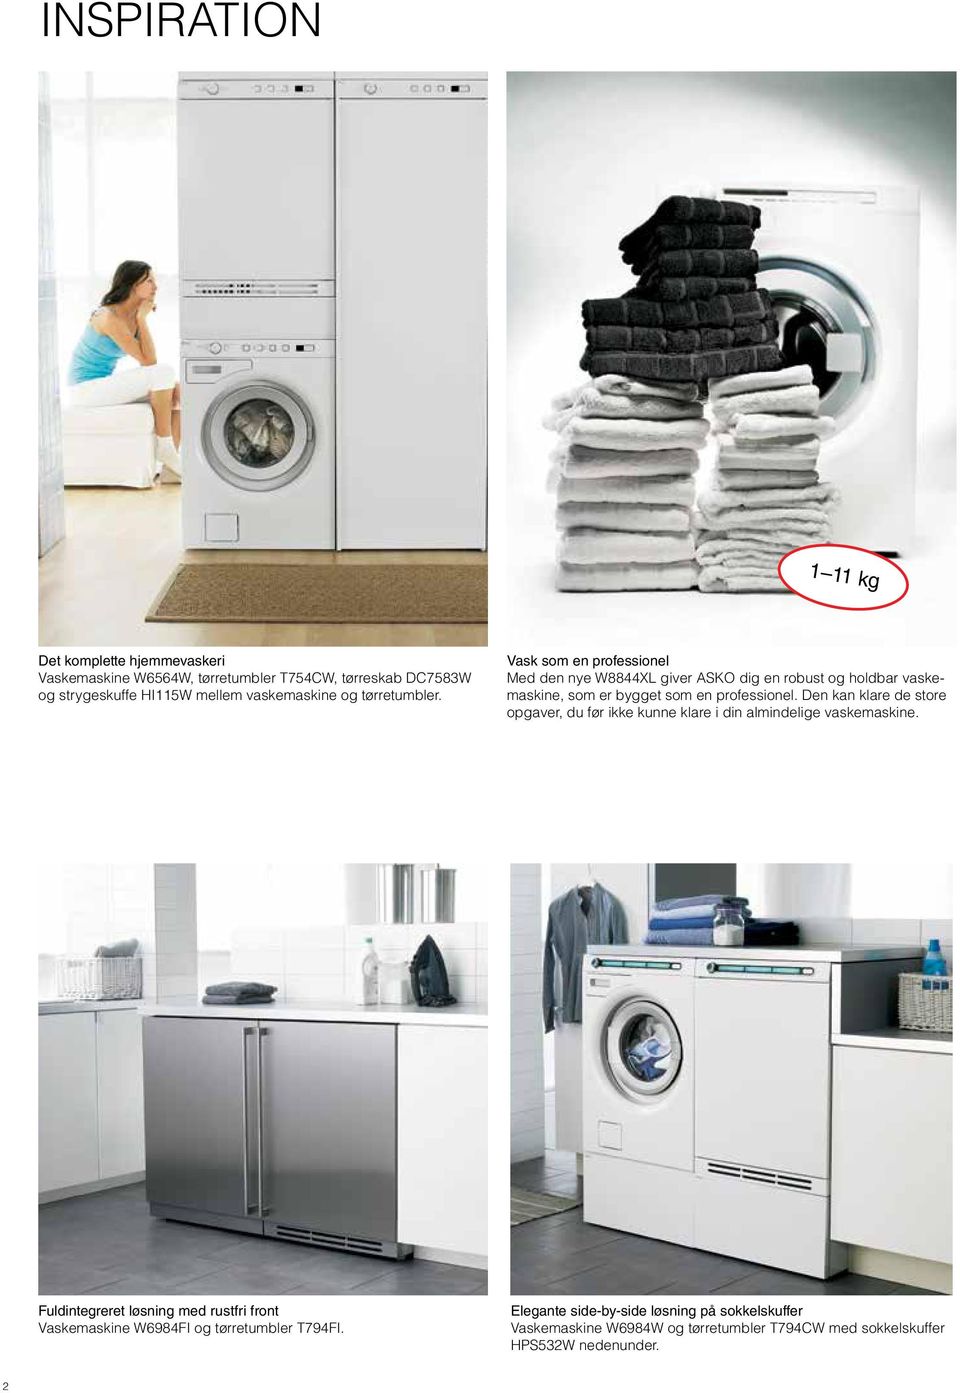 Den kan klare de store opgaver, du før ikke kunne klare i din almindelige vaskemaskine.